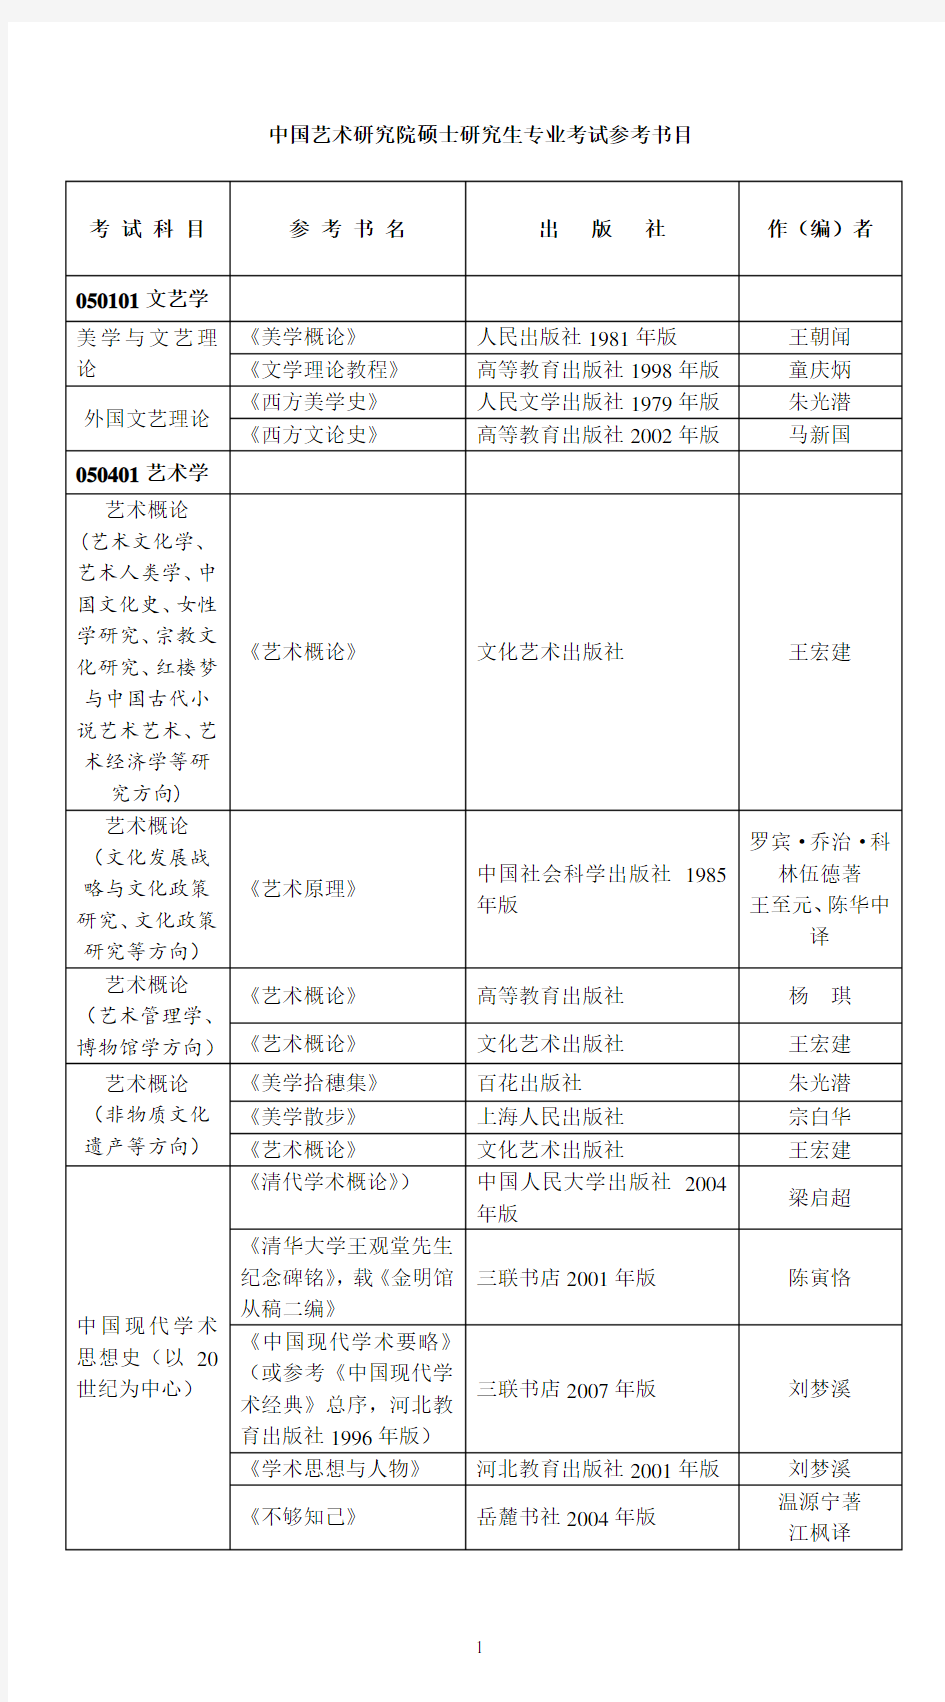 中国艺术研究院硕士研究生专业考试参考书目(仅供参考)